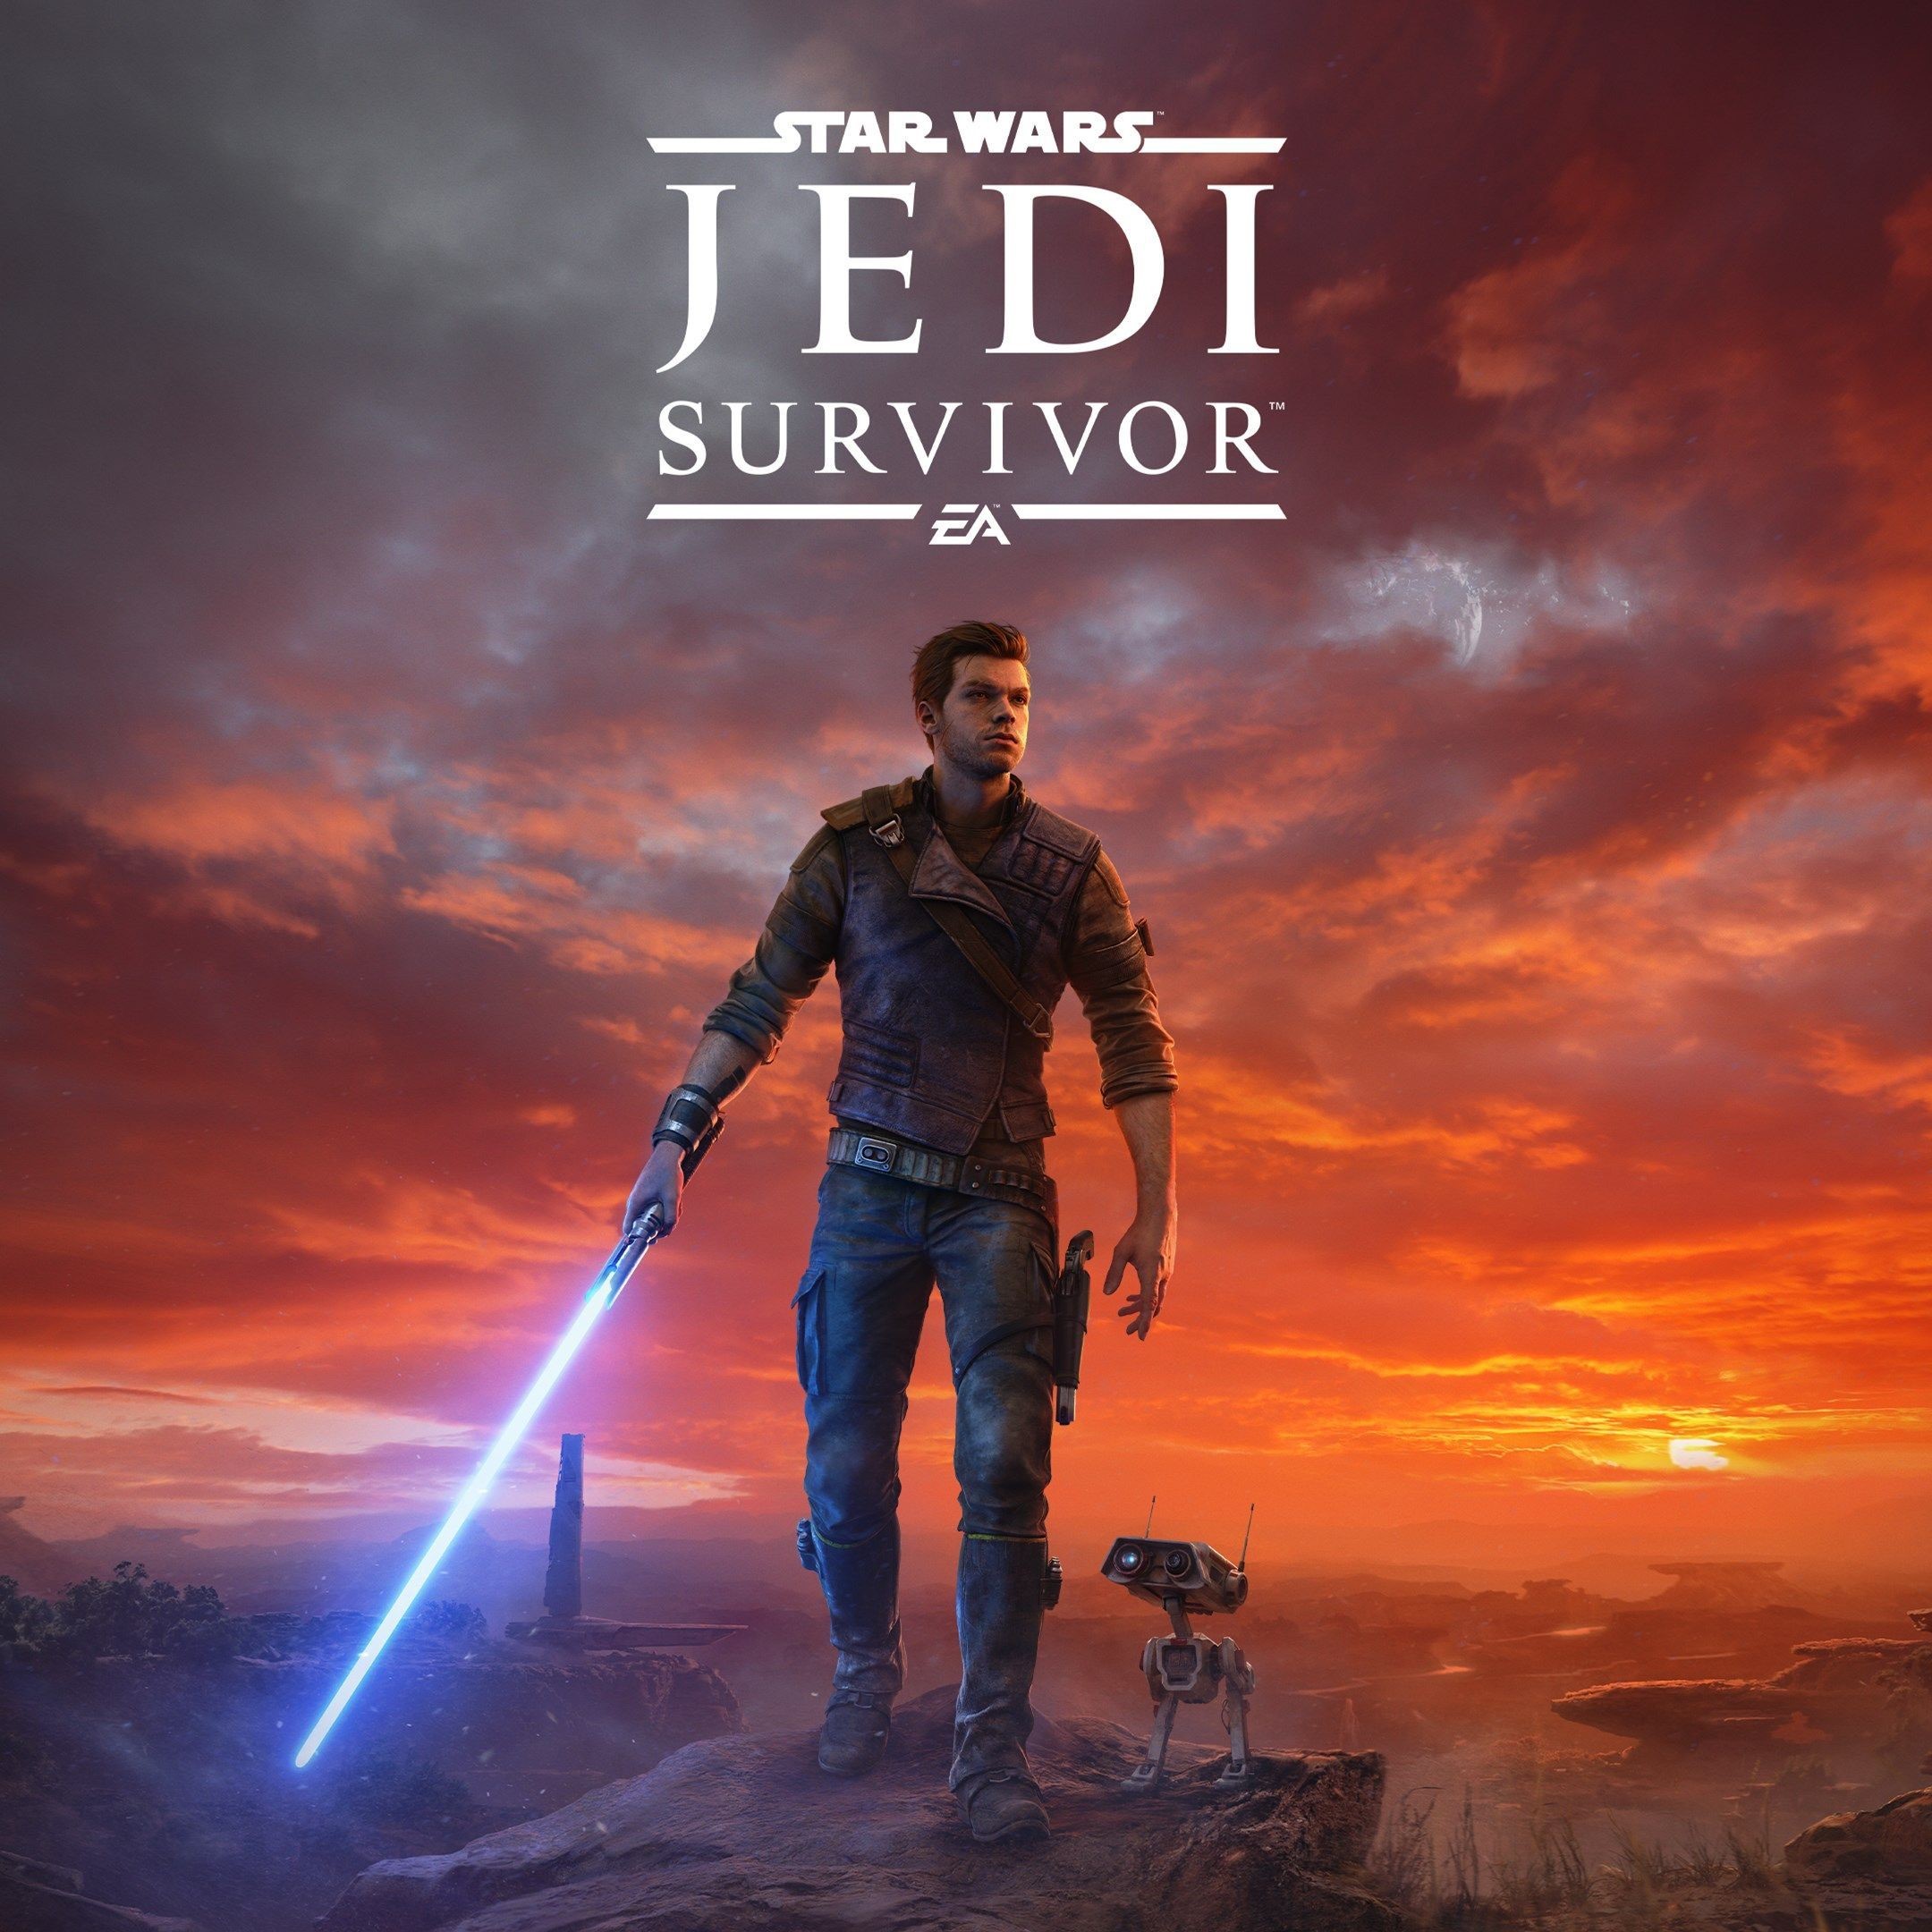 Star wars jedi steam купить. Кэл кестис Star Wars Jedi Survivor. Star Wars Jedi: Survivor Xbox. Star Wars Jedi: Survivor обложка. Star Wars Jedi: Survivor 2.